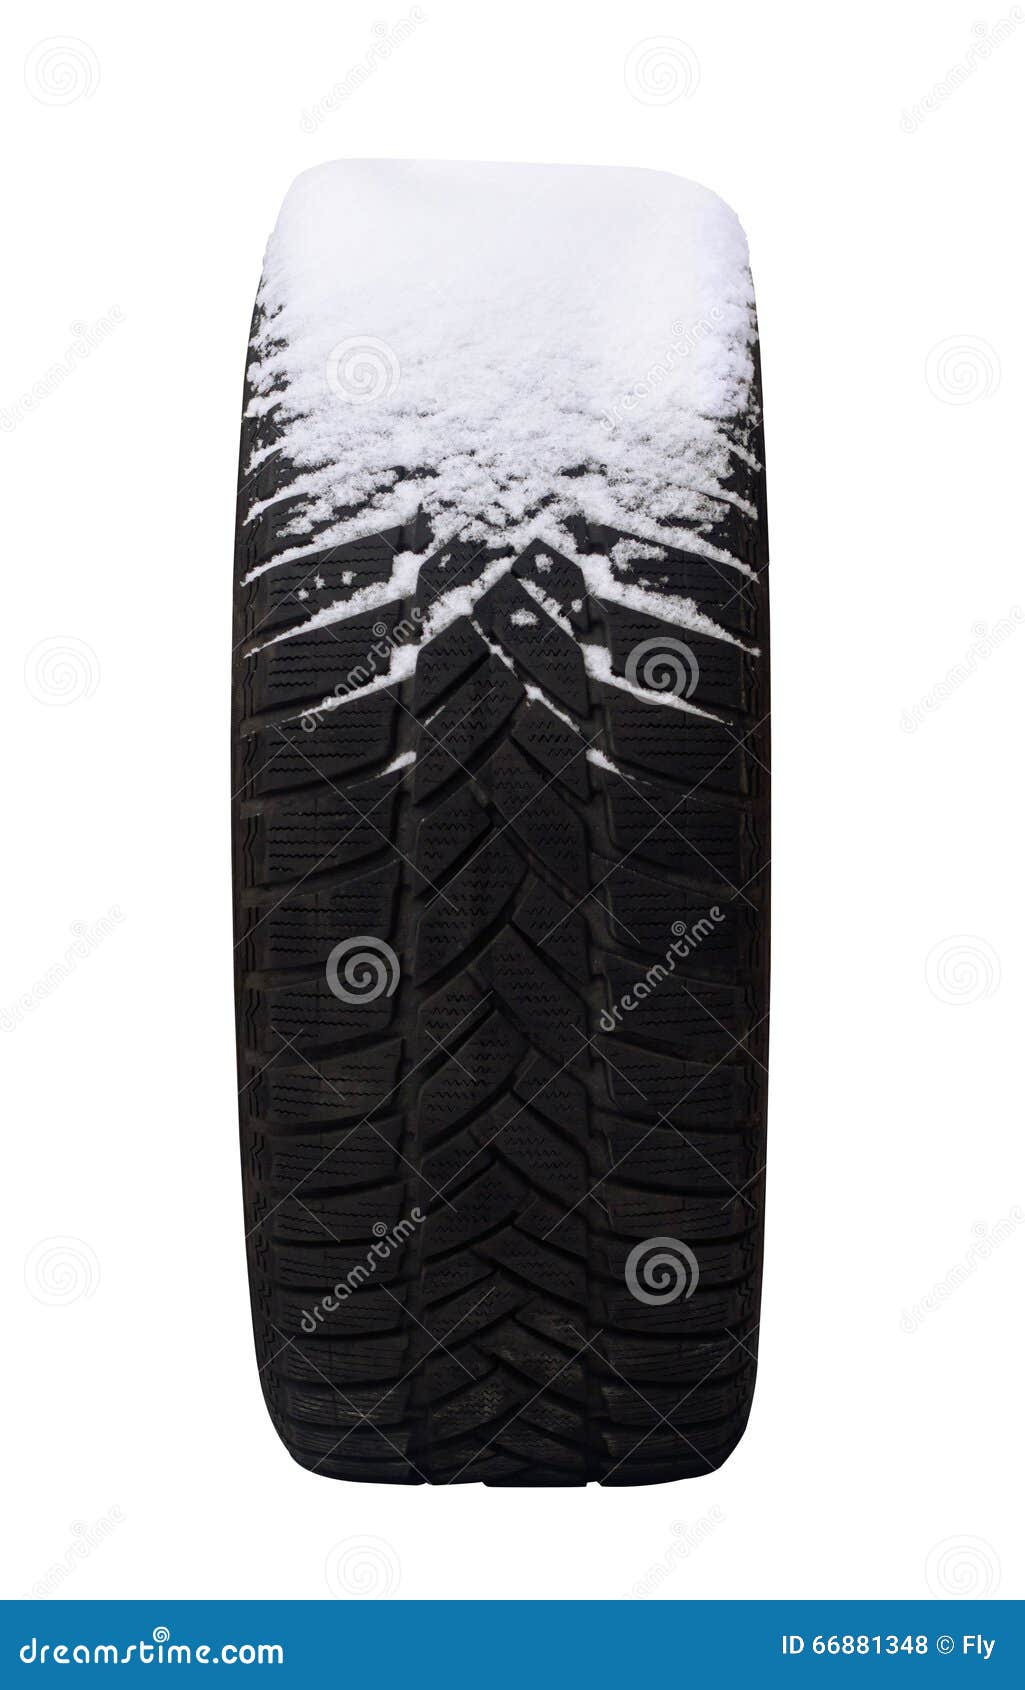 Alter Reifen bedeckt im Schnee. Schließen Sie oben von einer alten Reifenhälfte, die im Schnee umfasst wird, der auf weißem Hintergrund lokalisiert wird